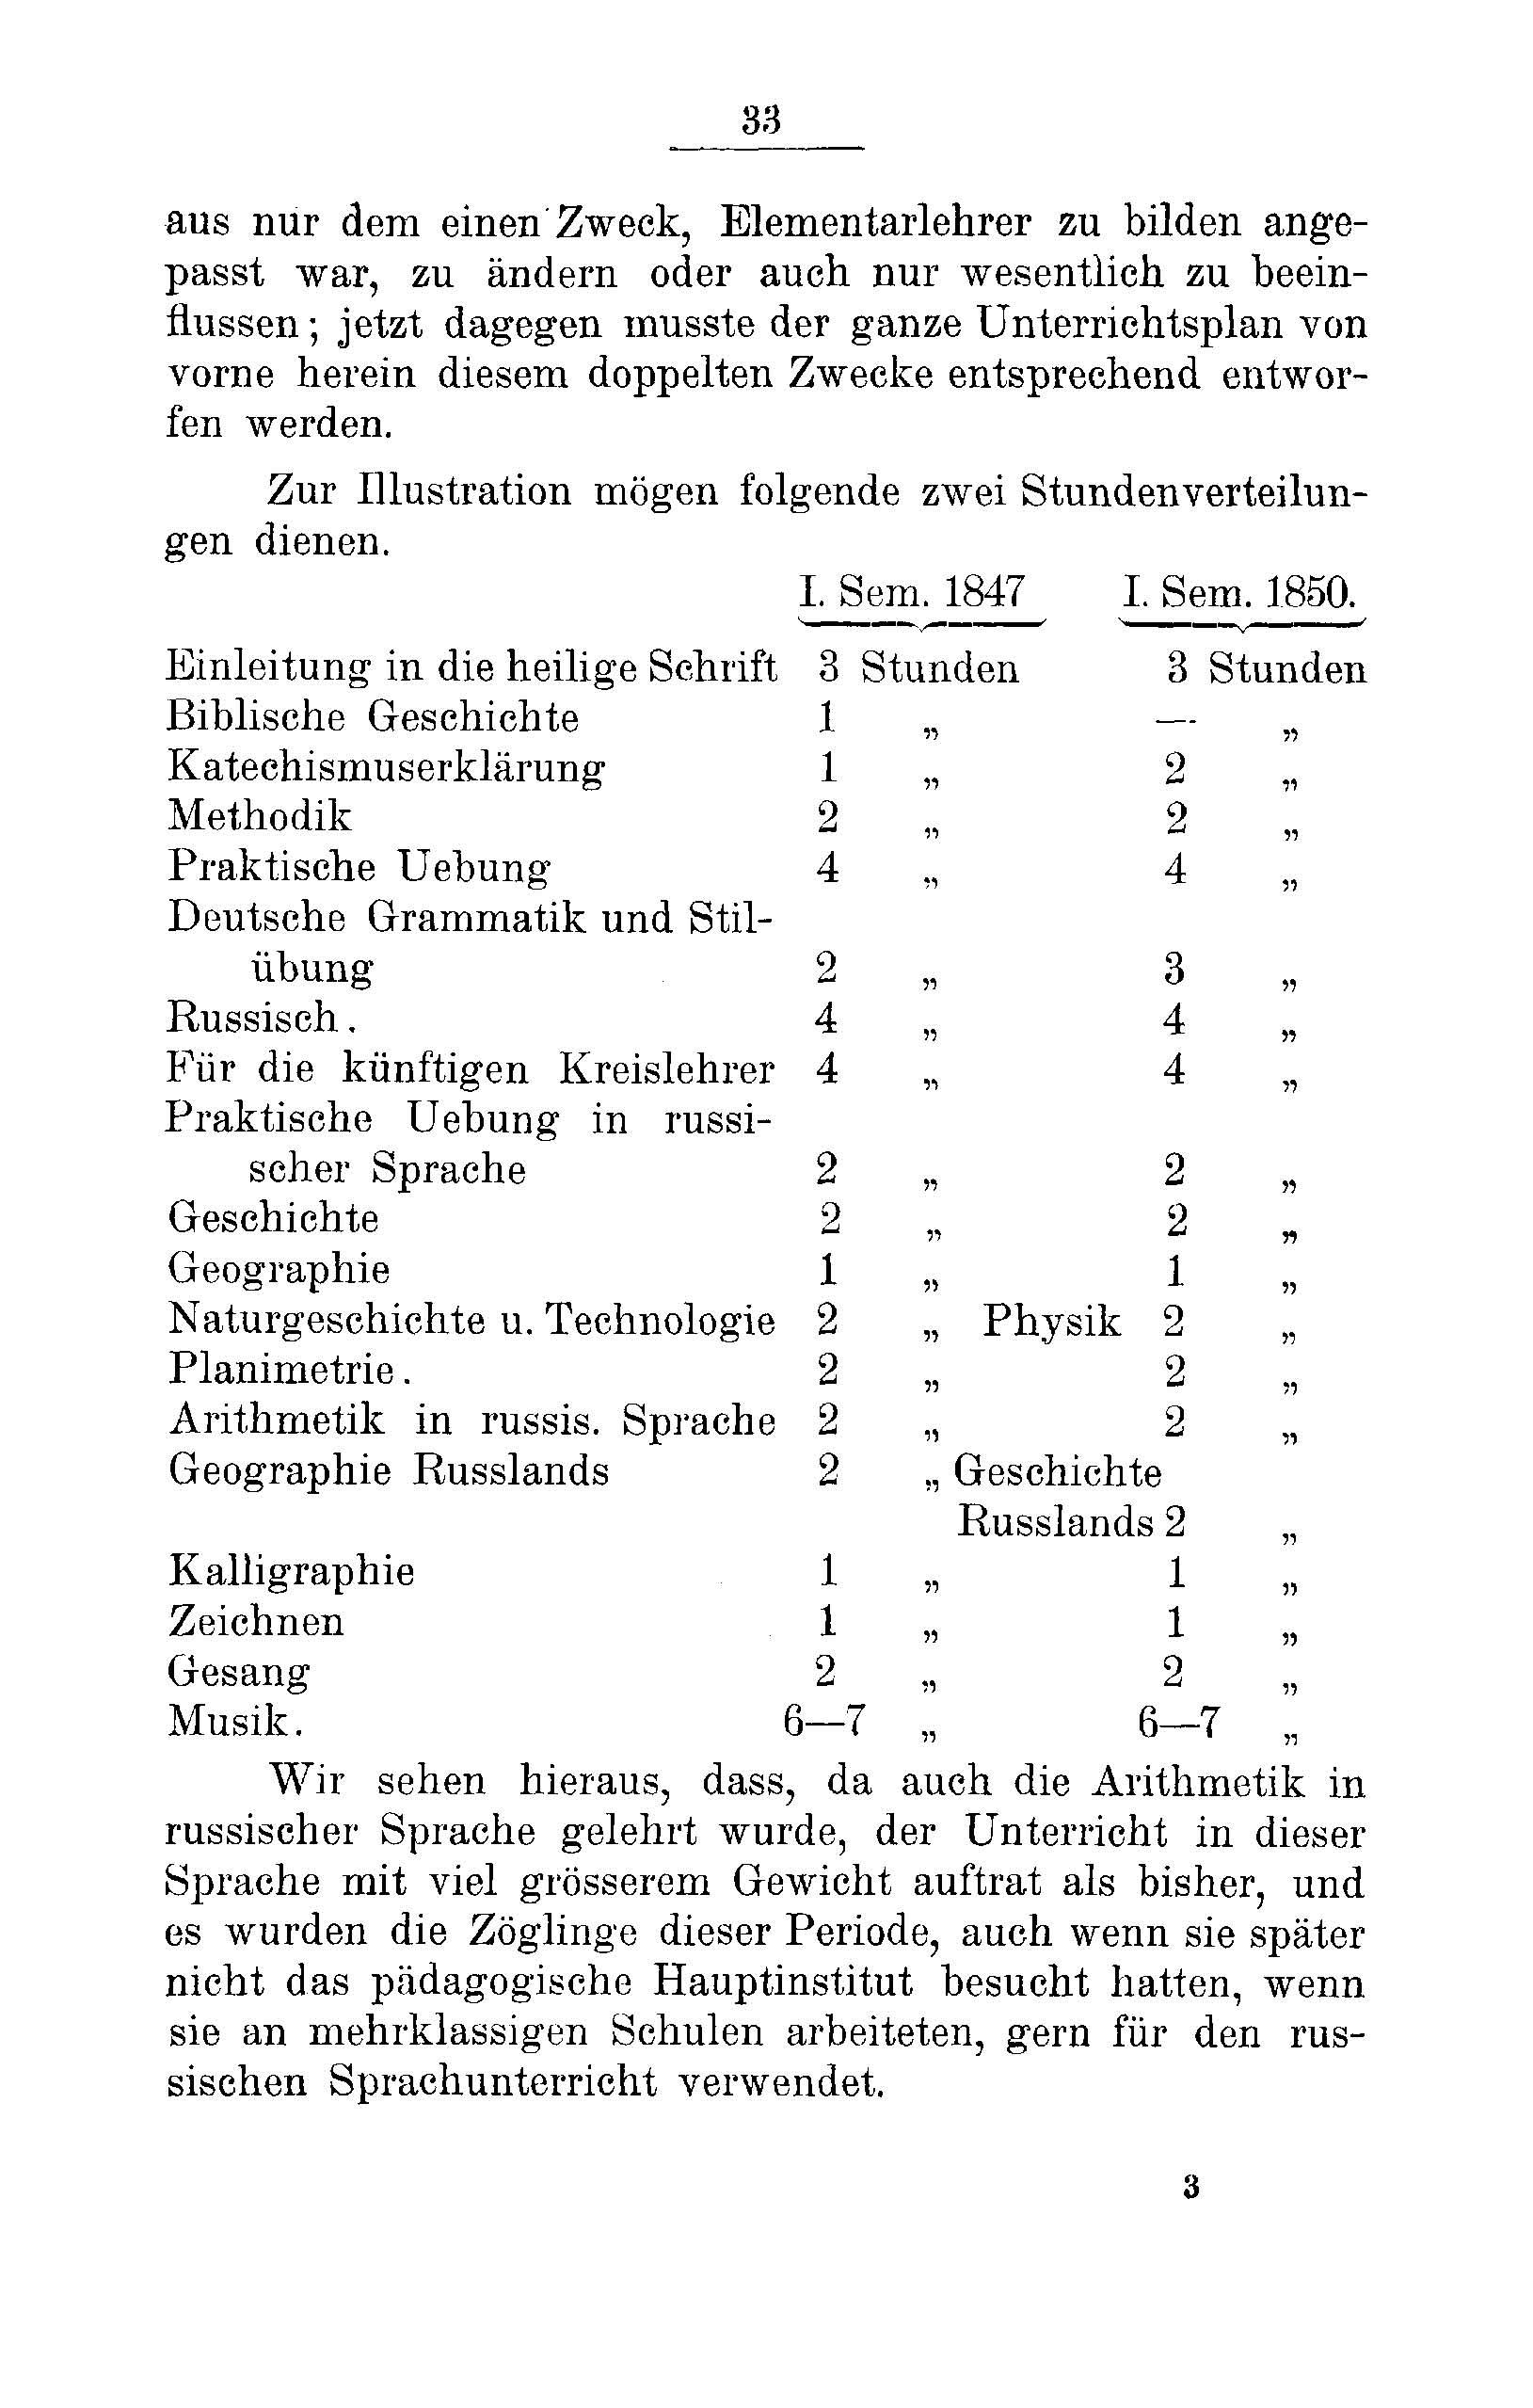 Das Erste Dorpatsche Lehrer-Seminar (1890) | 35. Main body of text